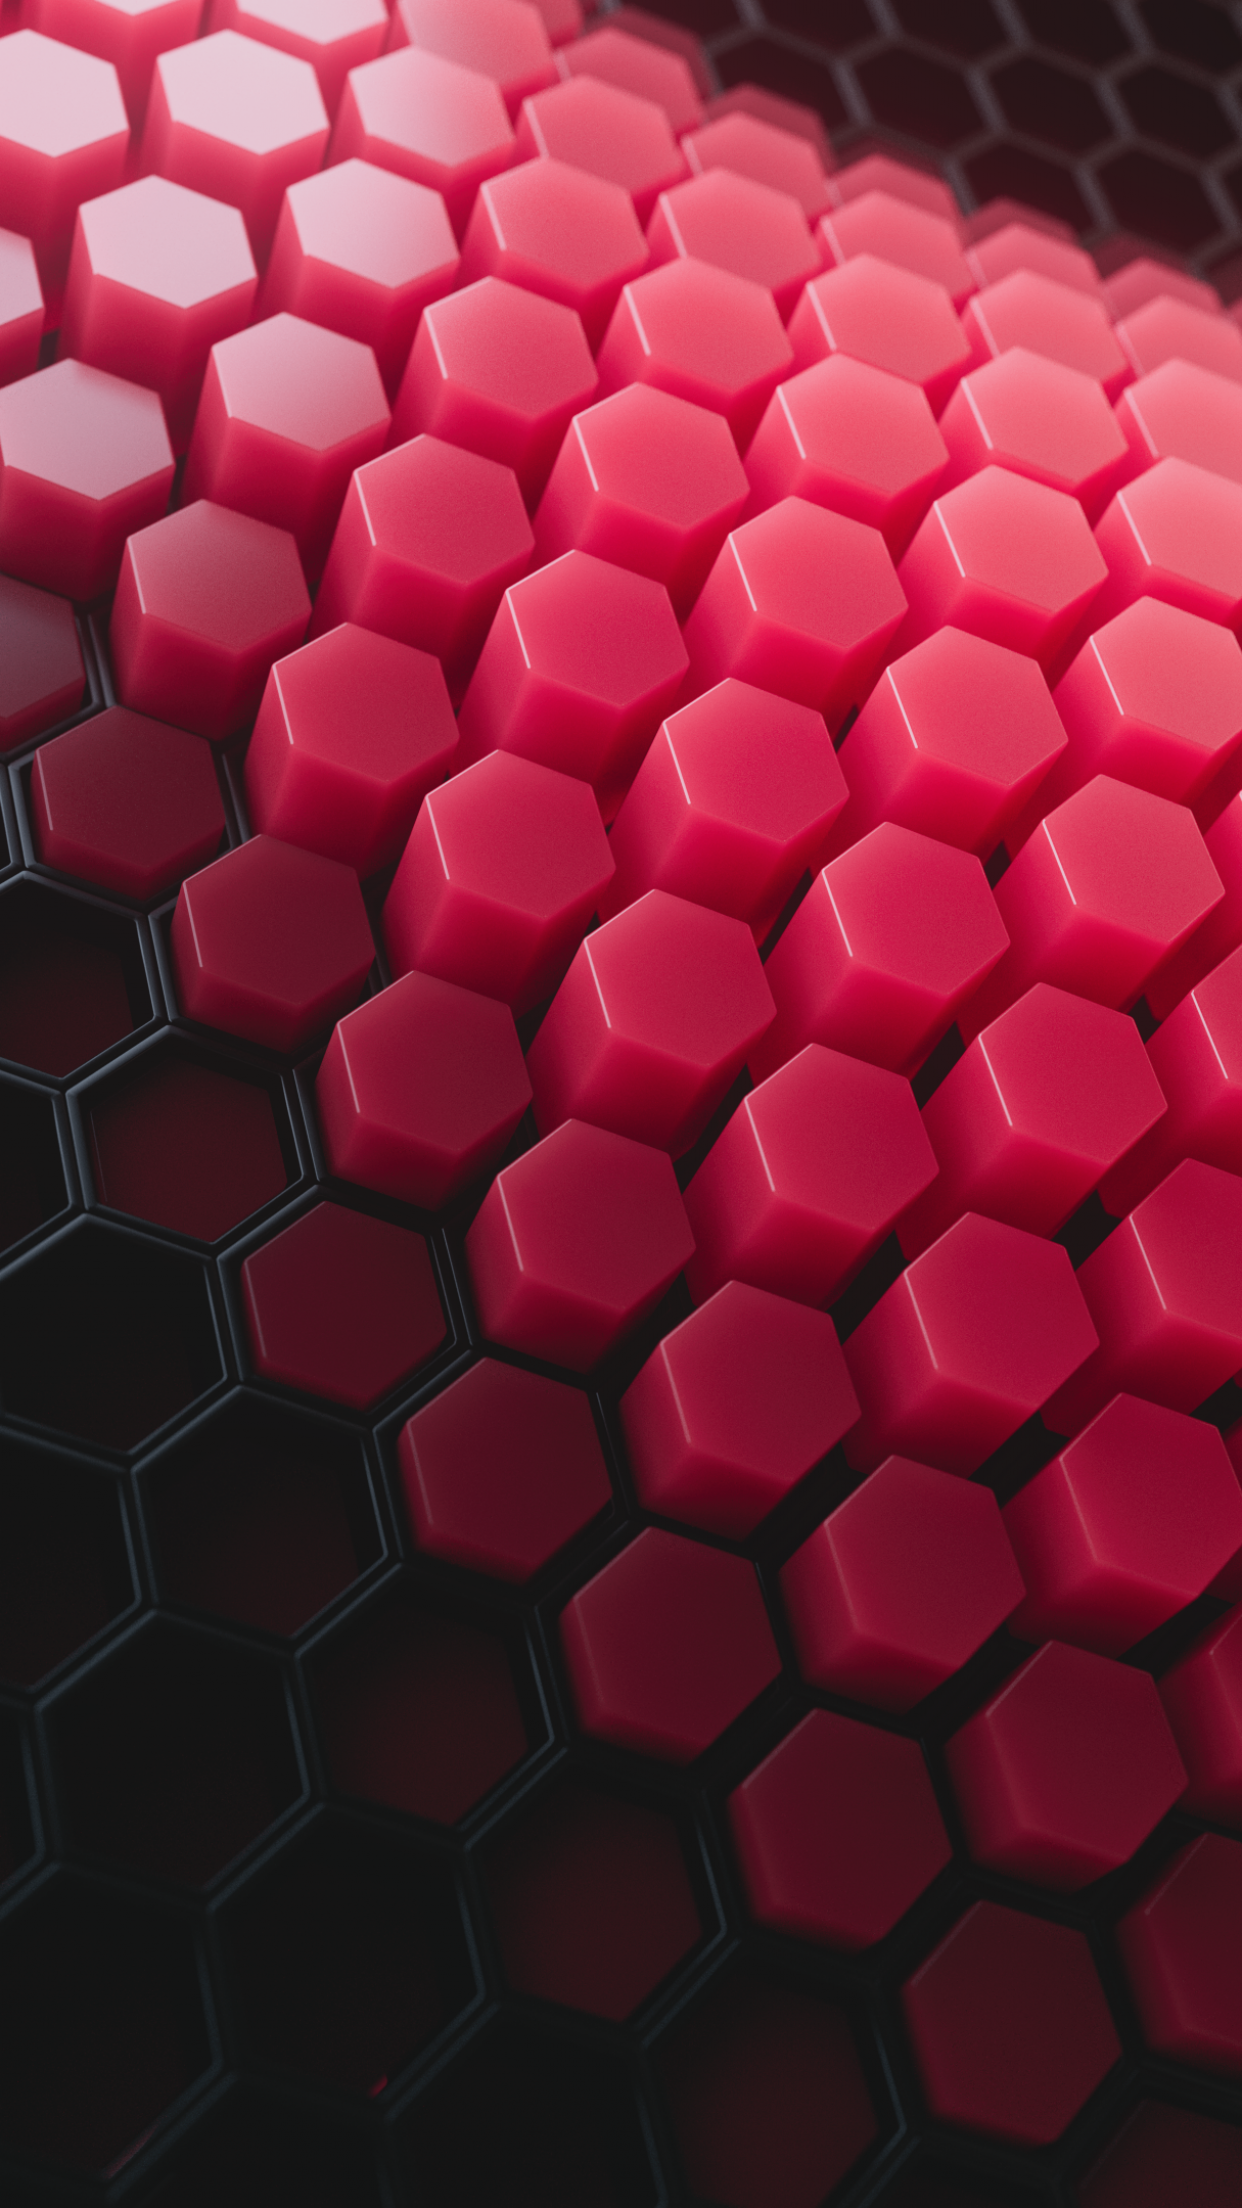 Với hình nền Hexagons Patterns #2276, bạn sẽ cảm nhận được sự hoàn hảo từ các hình sáu cạnh đối xứng. Lên sóng những thiết kế đơn giản, tuy nhiên hoàn thiện và tinh tế, Hexagons patters #2276 làm nổi bật cho màn hình của bạn trong những giây phút thư giãn.